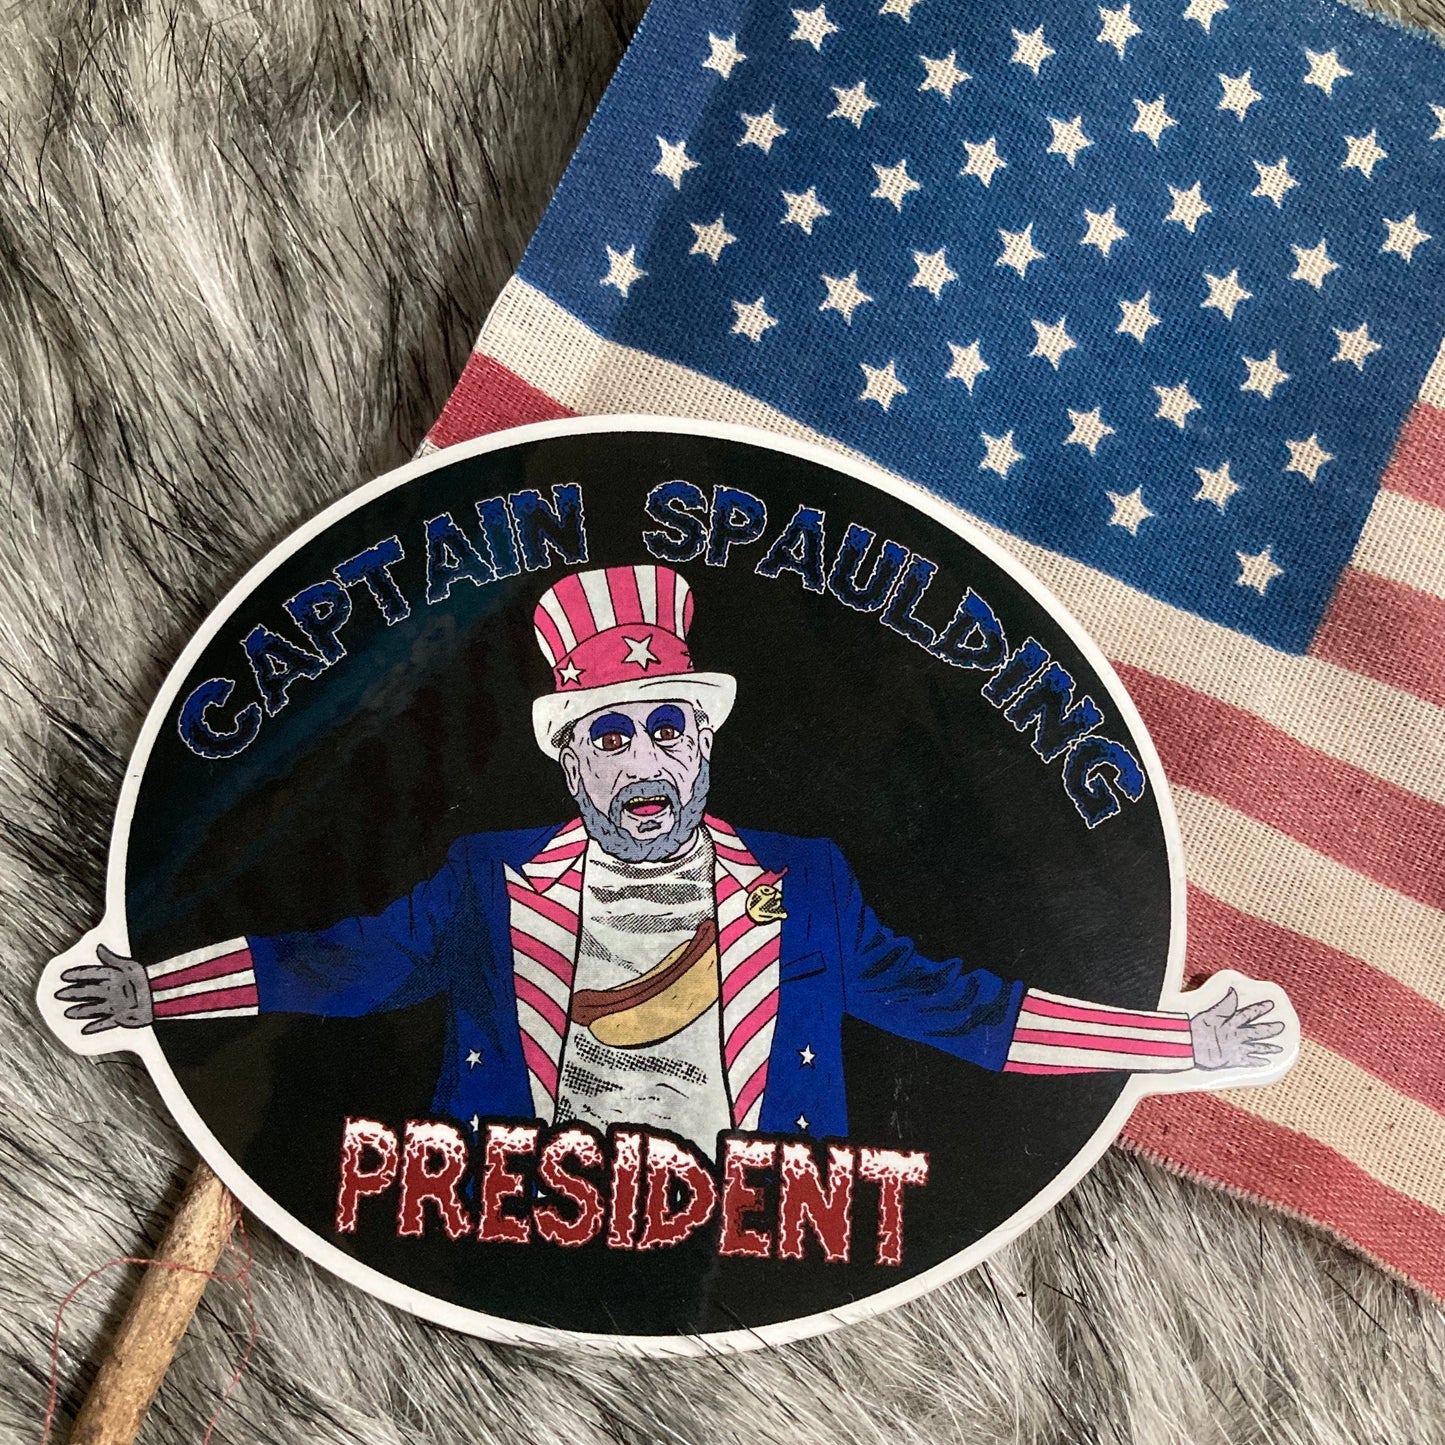 Captain Spaulding 4” sticker